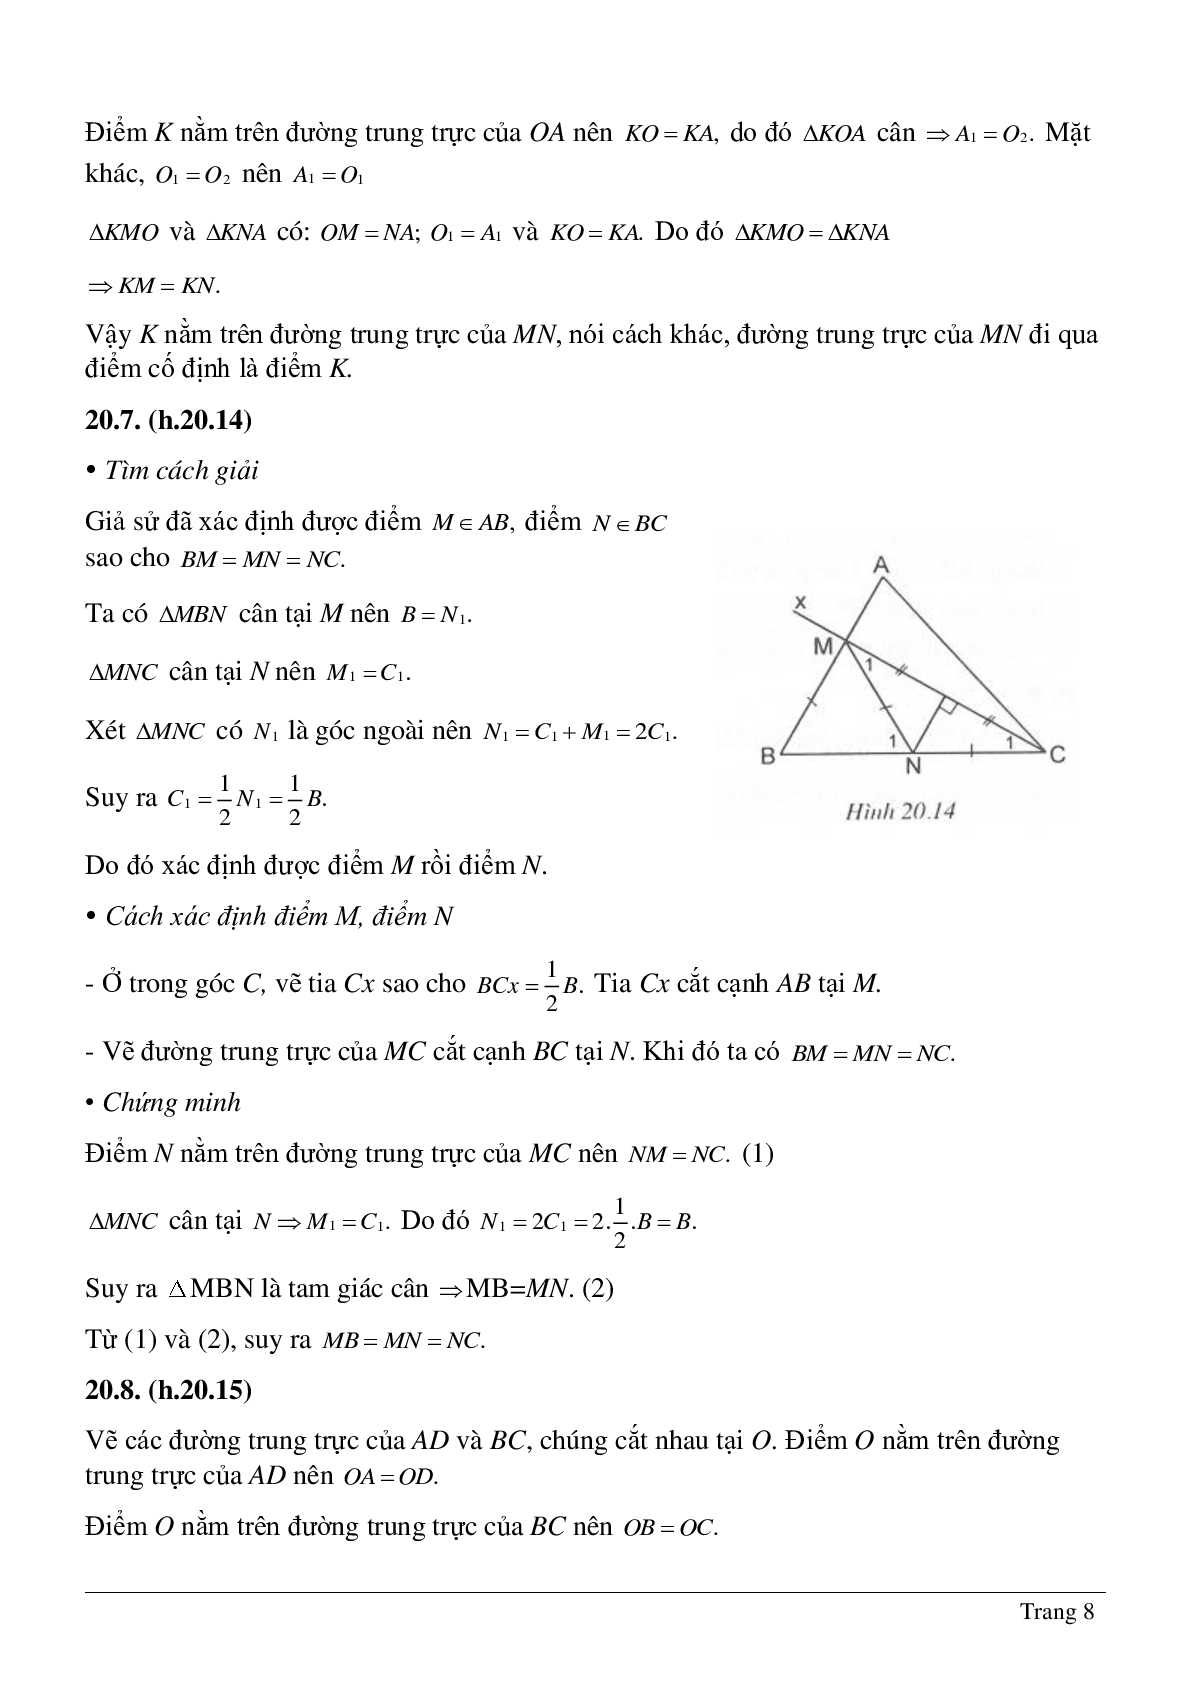 Tổng hợp những bài tập về Tính chất ba đường trung trực, ba đường cao của tam giác có lời giải (trang 8)